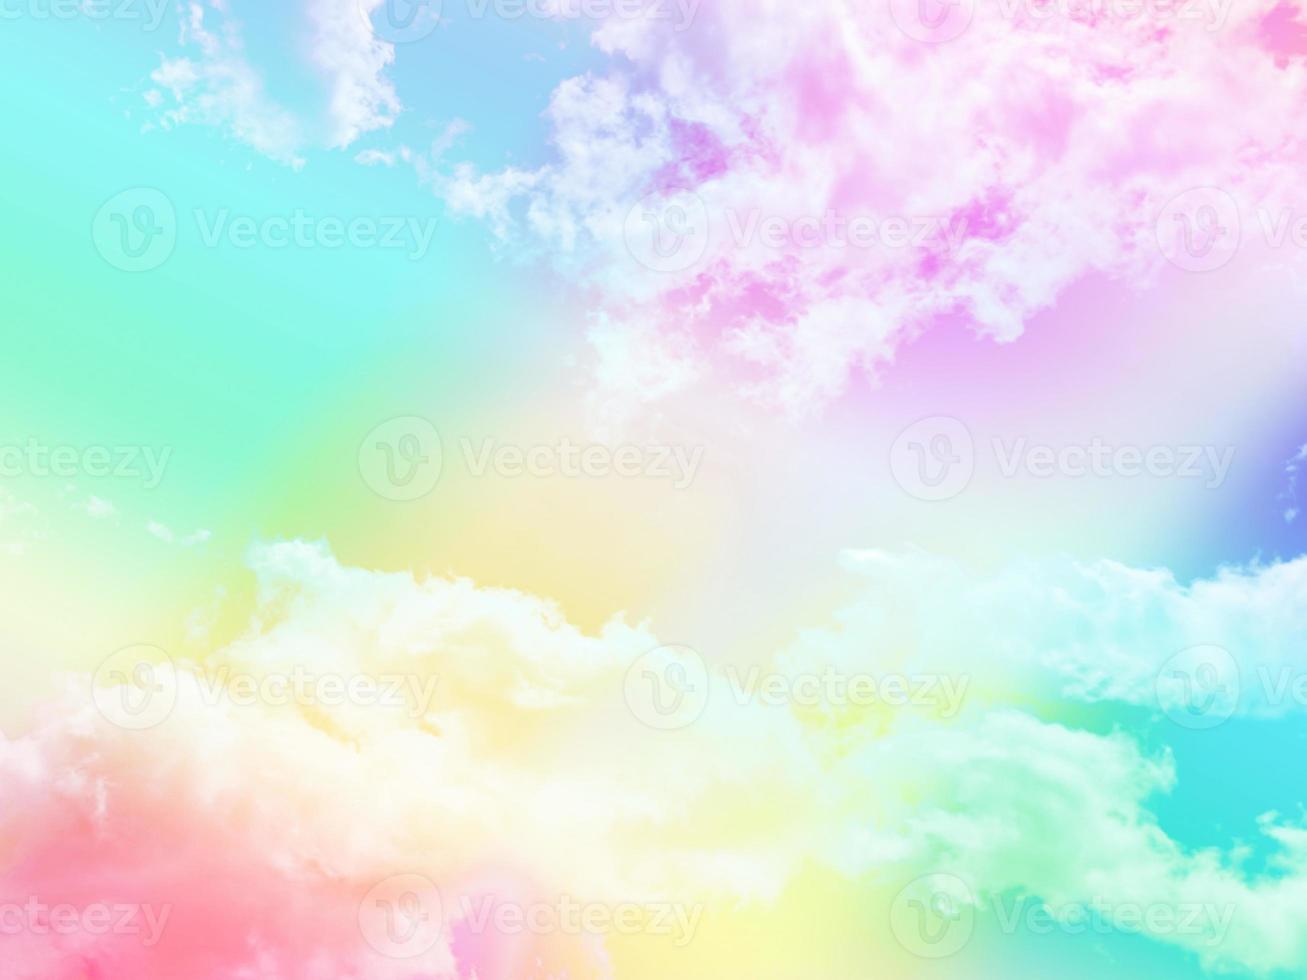 schönheit süß pastellrot grün bunt mit flauschigen wolken am himmel. mehrfarbiges Regenbogenbild. abstrakte Fantasie wachsendes Licht foto